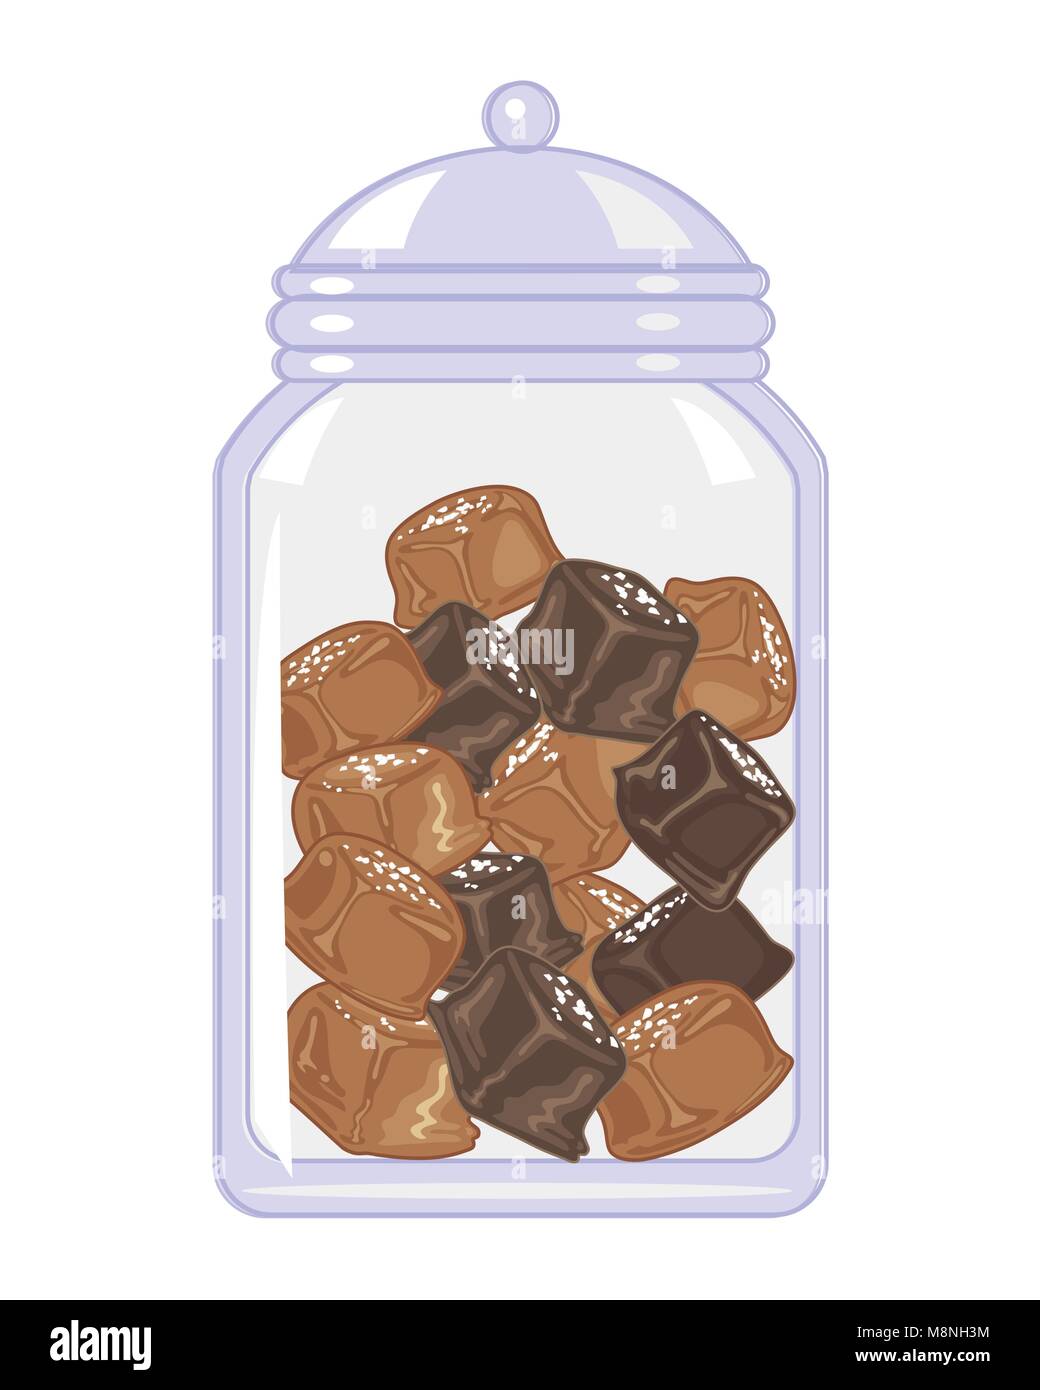 Un vecteur illustration au format eps d'un bocal de verre de caramel au beurre salé bonbons dans de petits carrés sur fond blanc Illustration de Vecteur